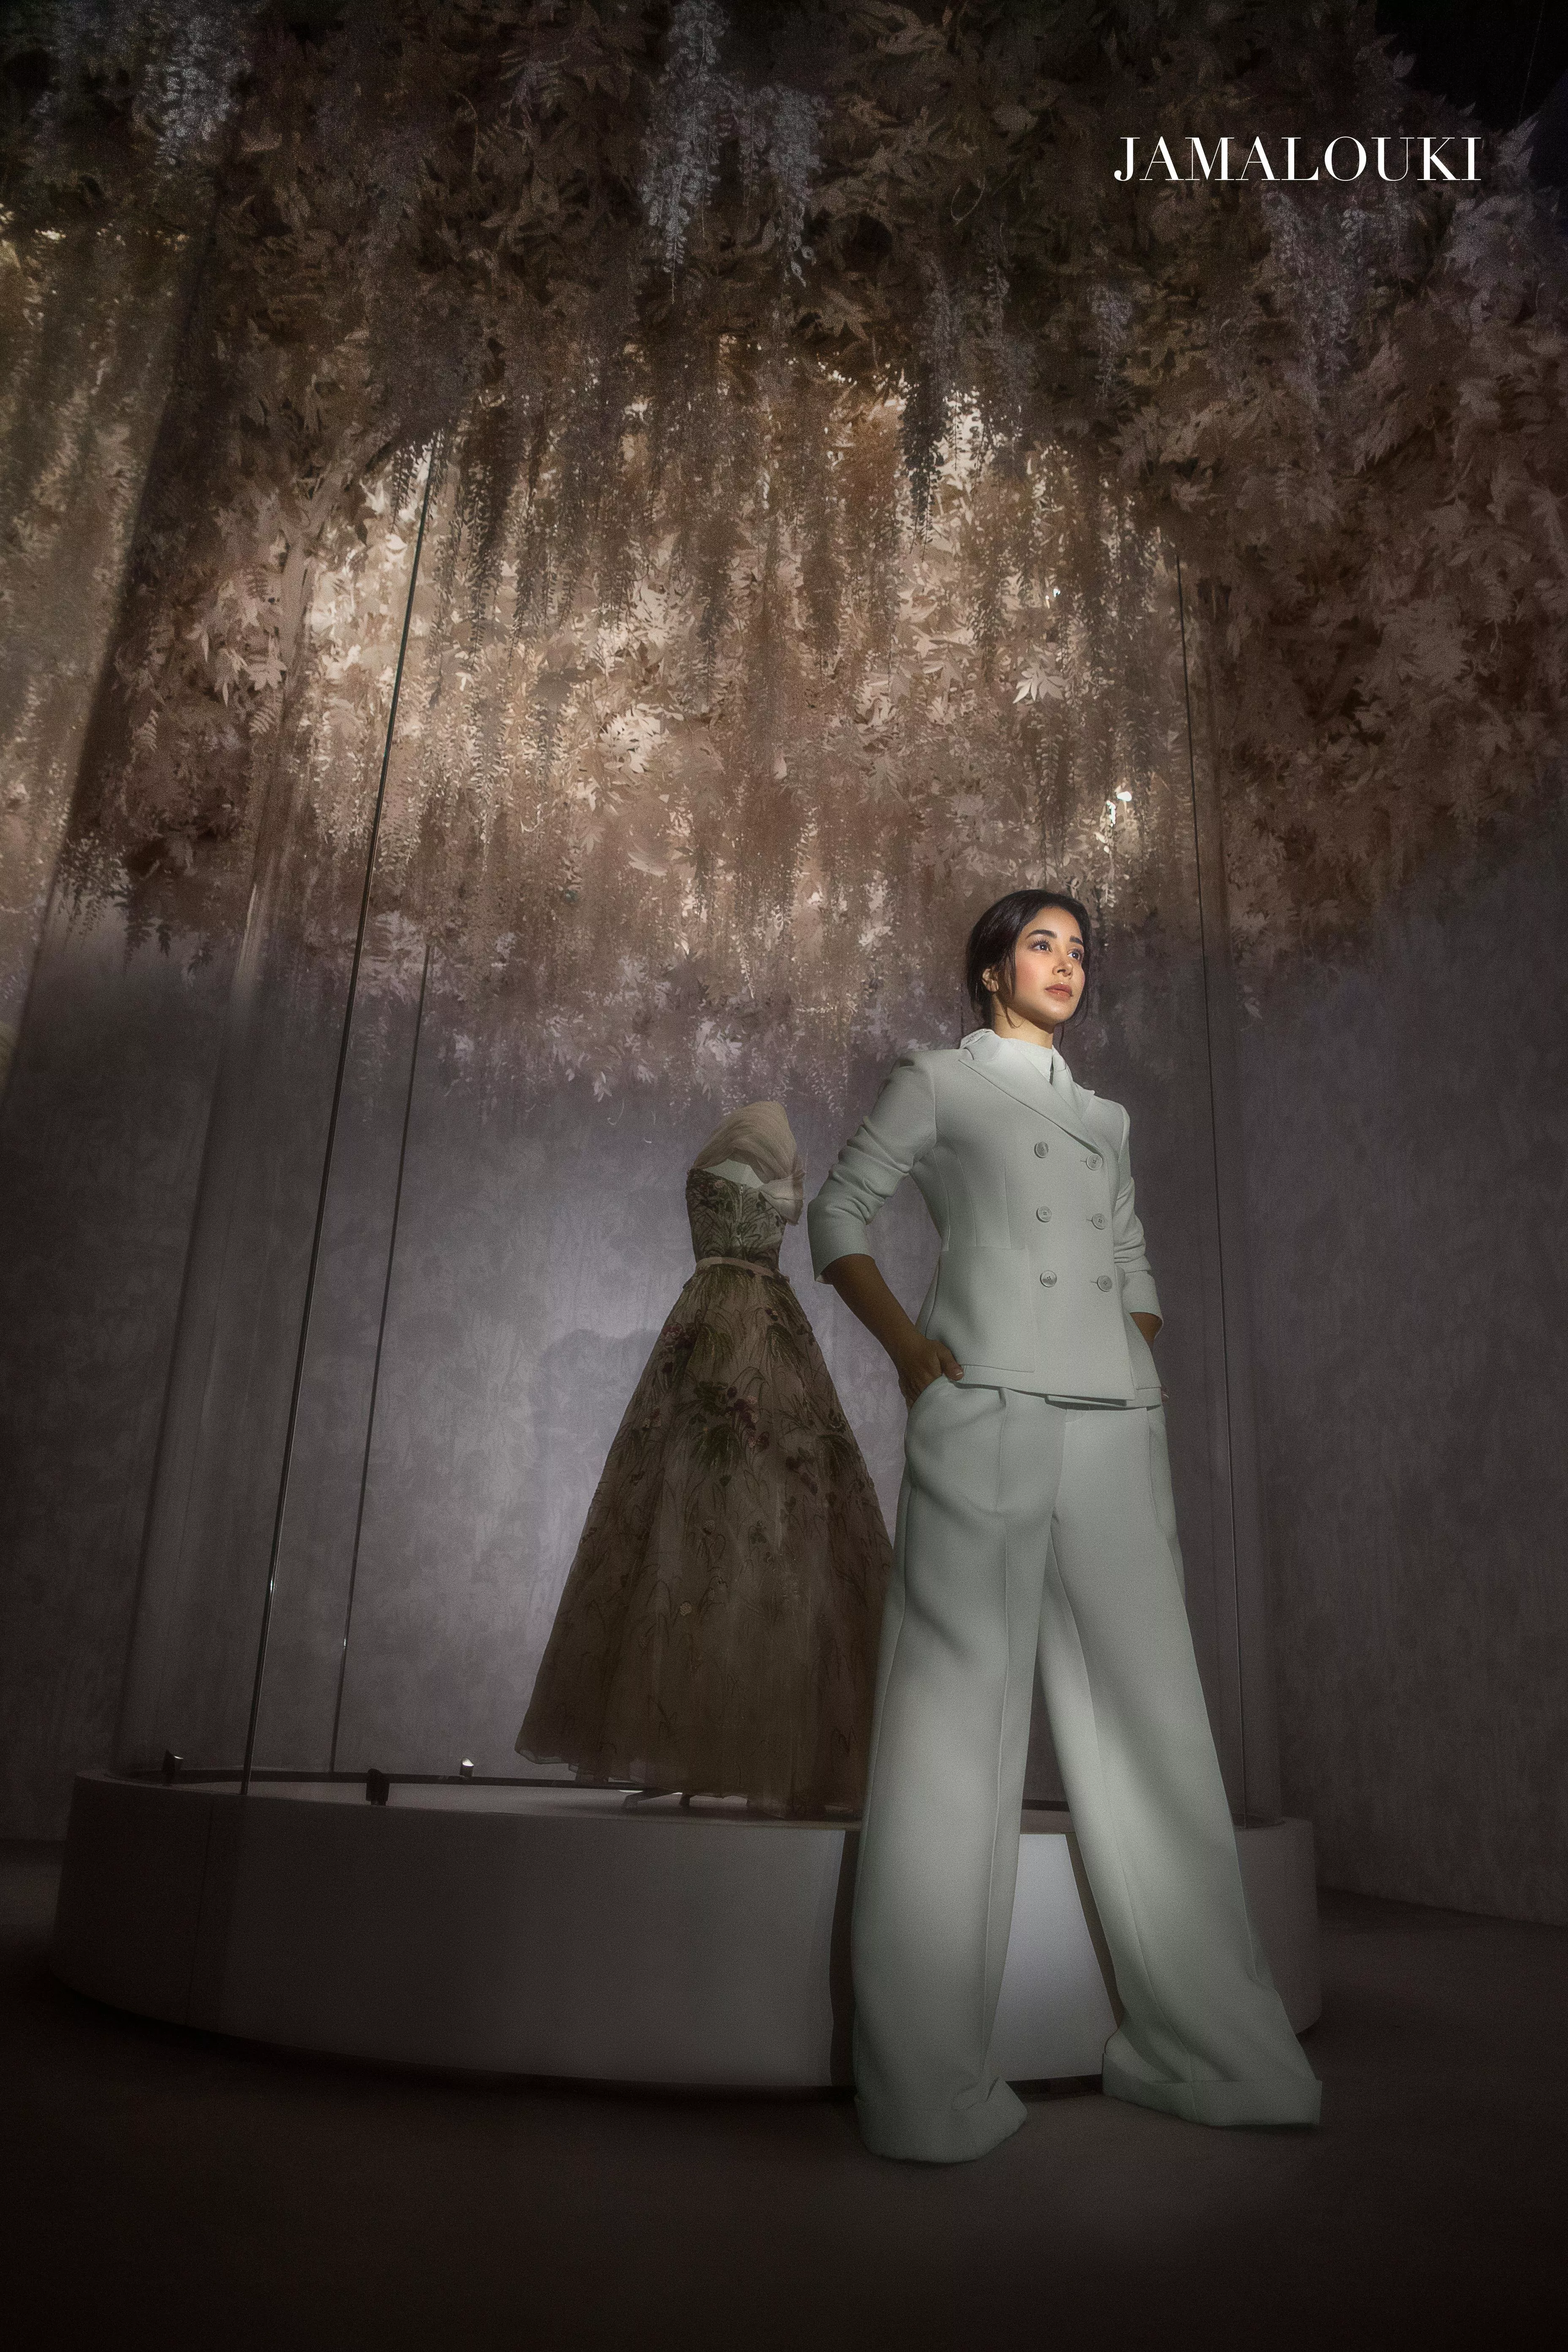 أسيل عمران في جلسة تصوير خاصة بمجموعة Dior التحضيرية لربيع 2022 ونجمة غلاف مجلّة جمالكِ لعدد نوفمبر 2021